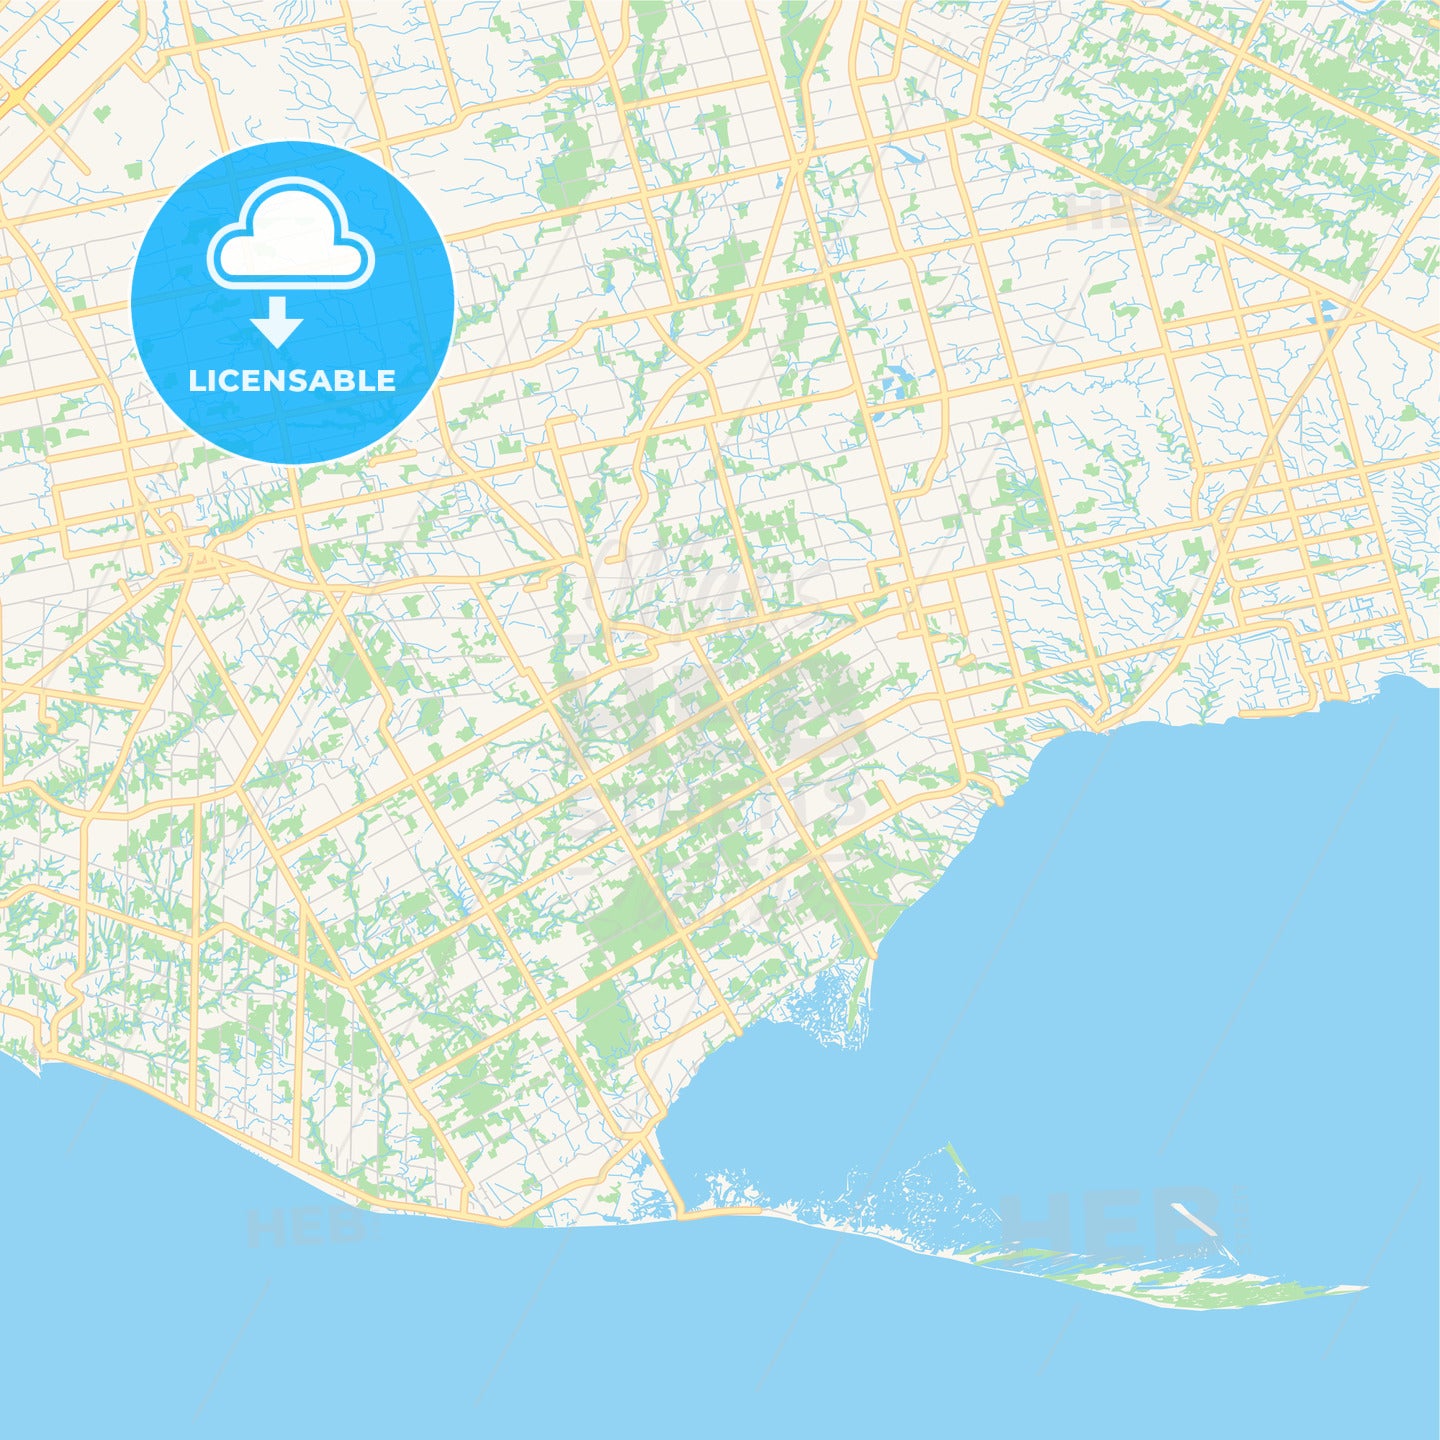 Empty vector map of Norfolk County, Ontario, Canada